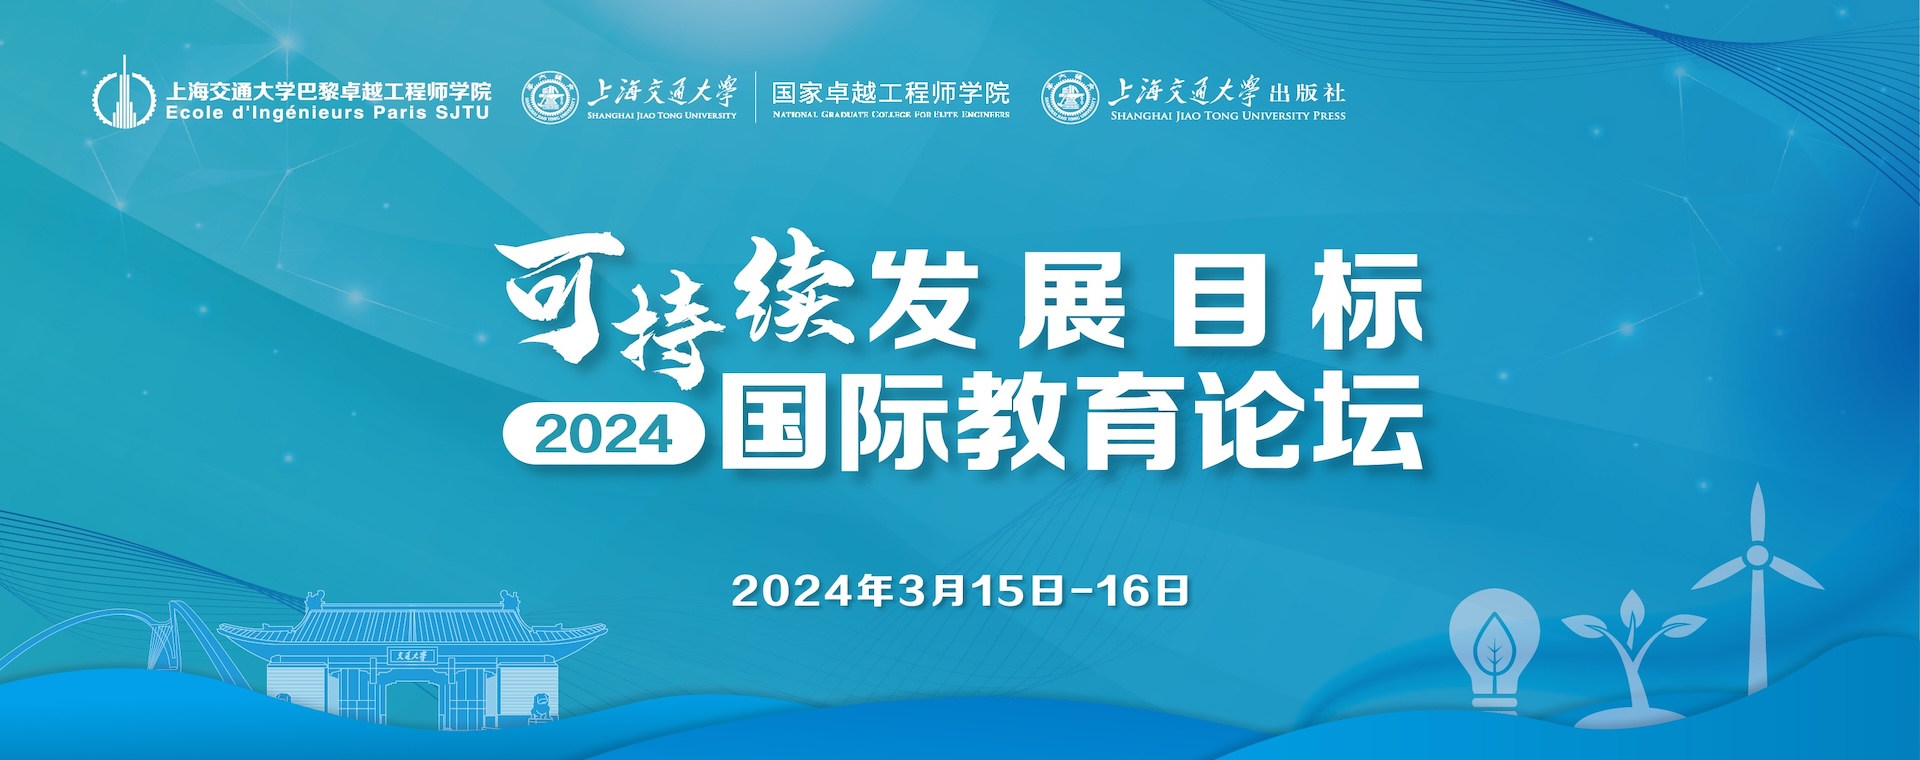 上海交通大学第一届可持续发展目标国际教育论坛会议通知（第一轮）